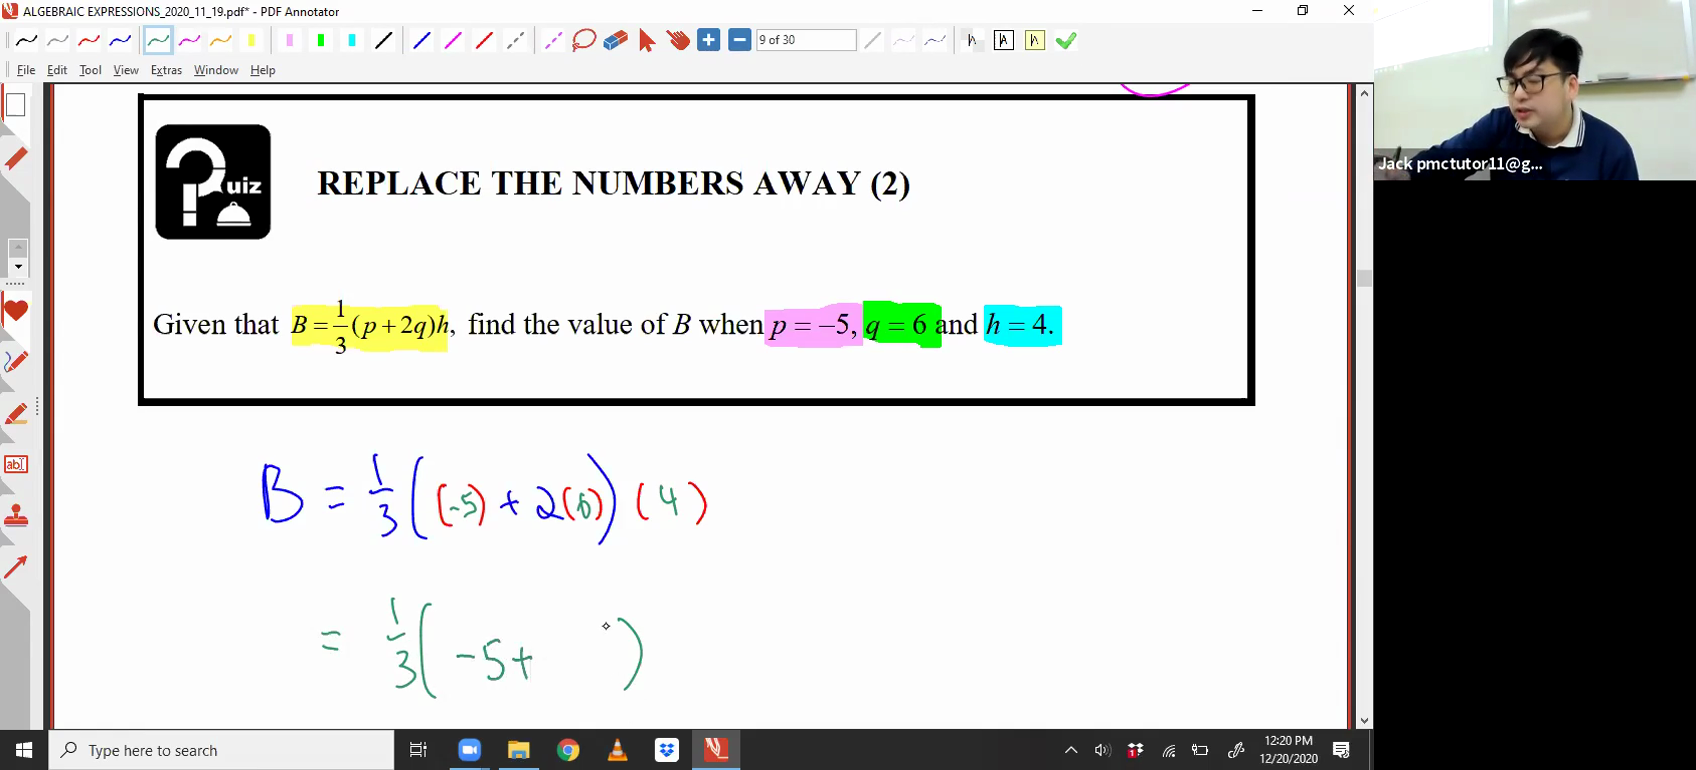 [ALGEBRAIC EXPRESSIONS] Algebraic Fractions